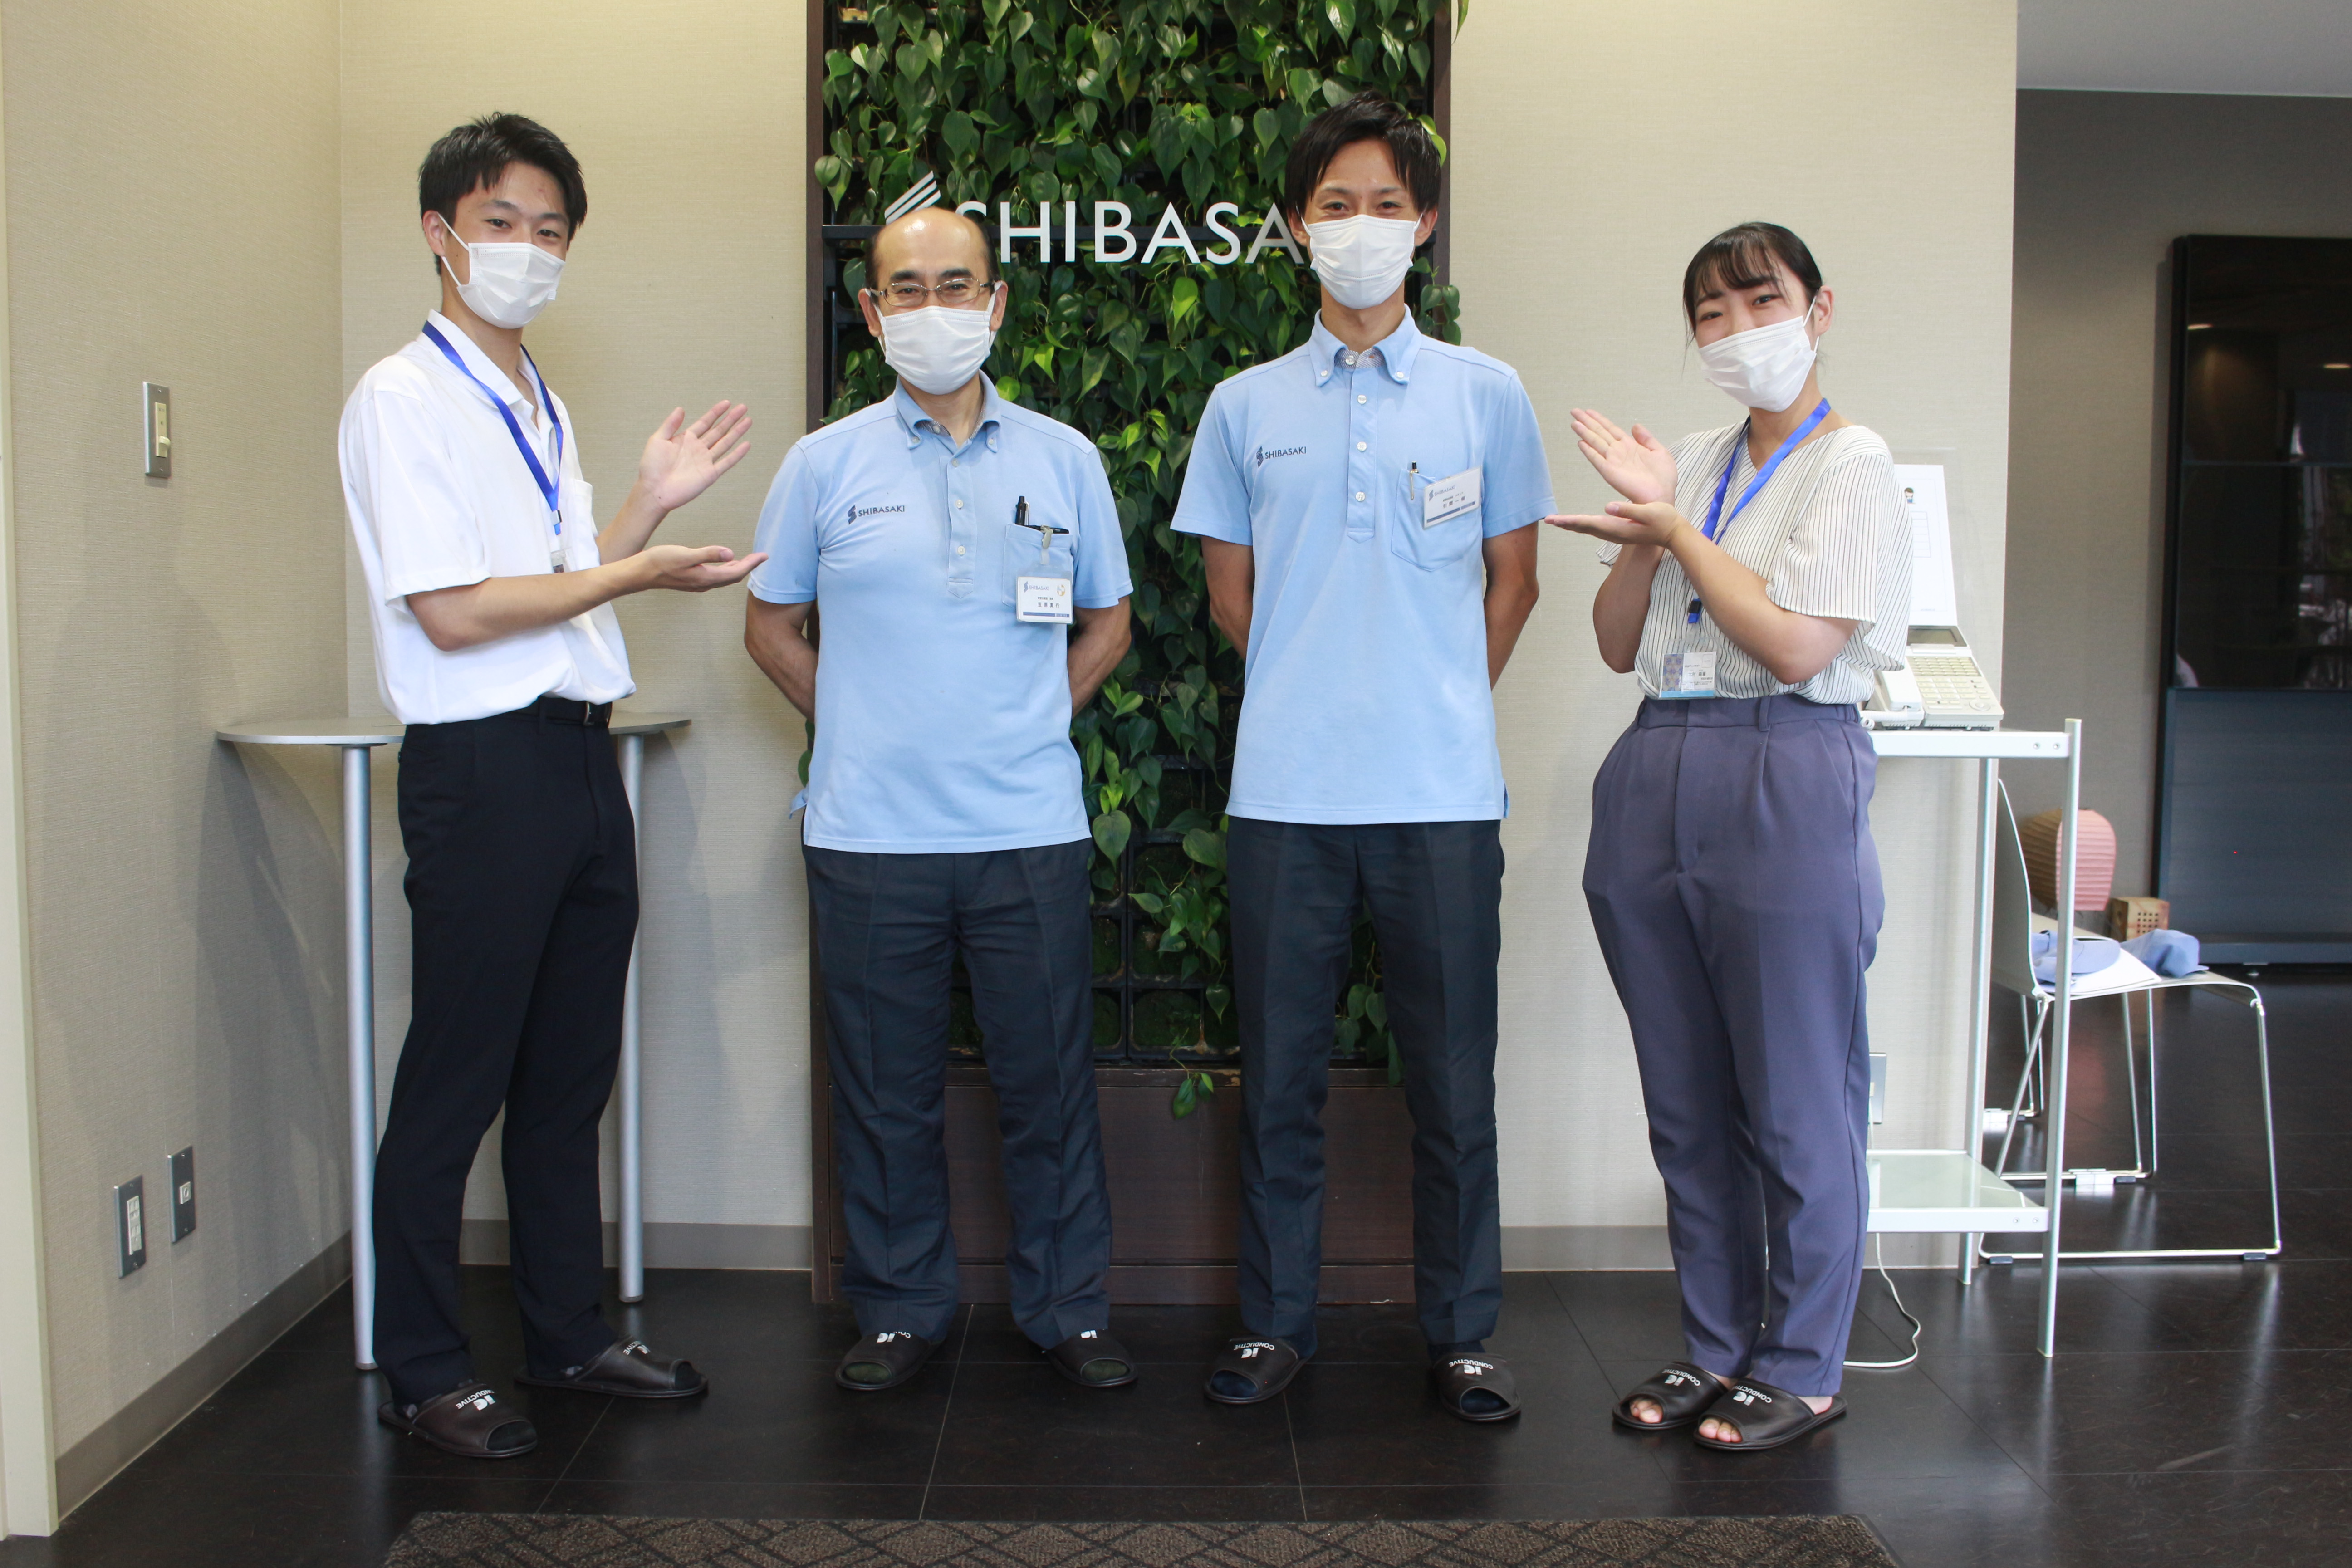 西武文理大学サービス経営学部の学生が任命された埼玉県の企業版「ちちぶアンバサダー」による企業紹介が始まりました